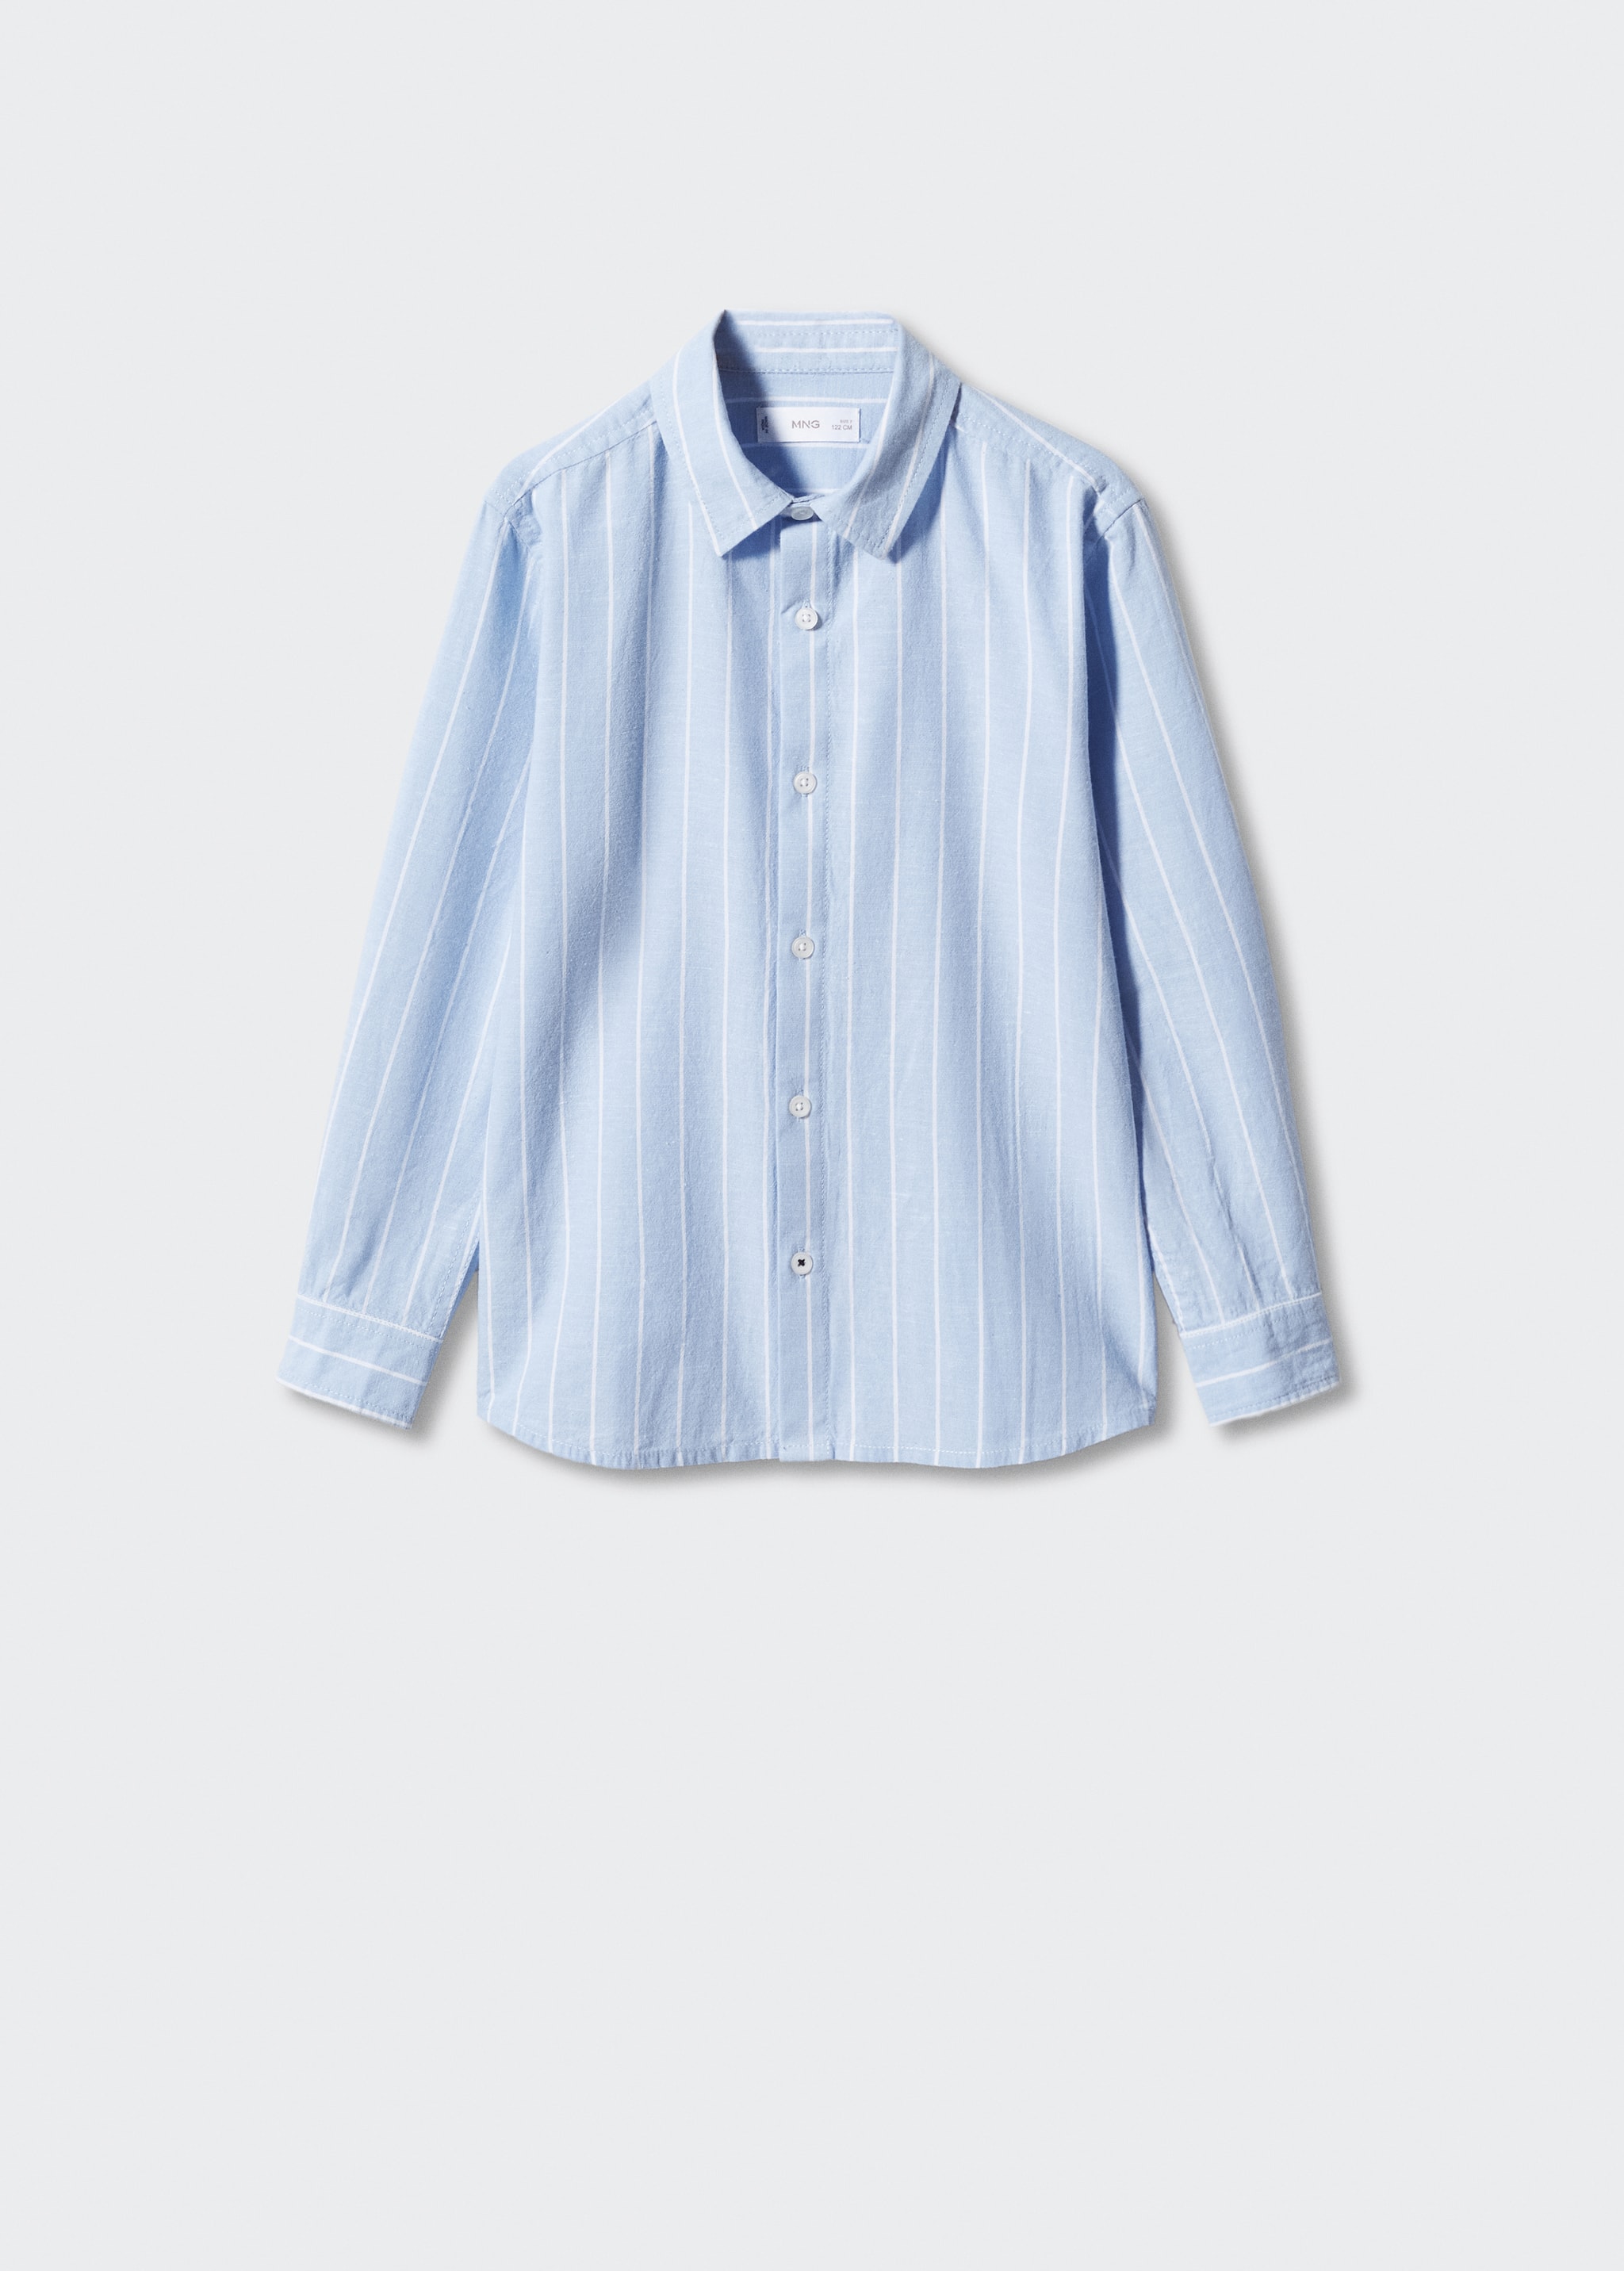 Camisa algodón lino rayas  - Artículo sin modelo